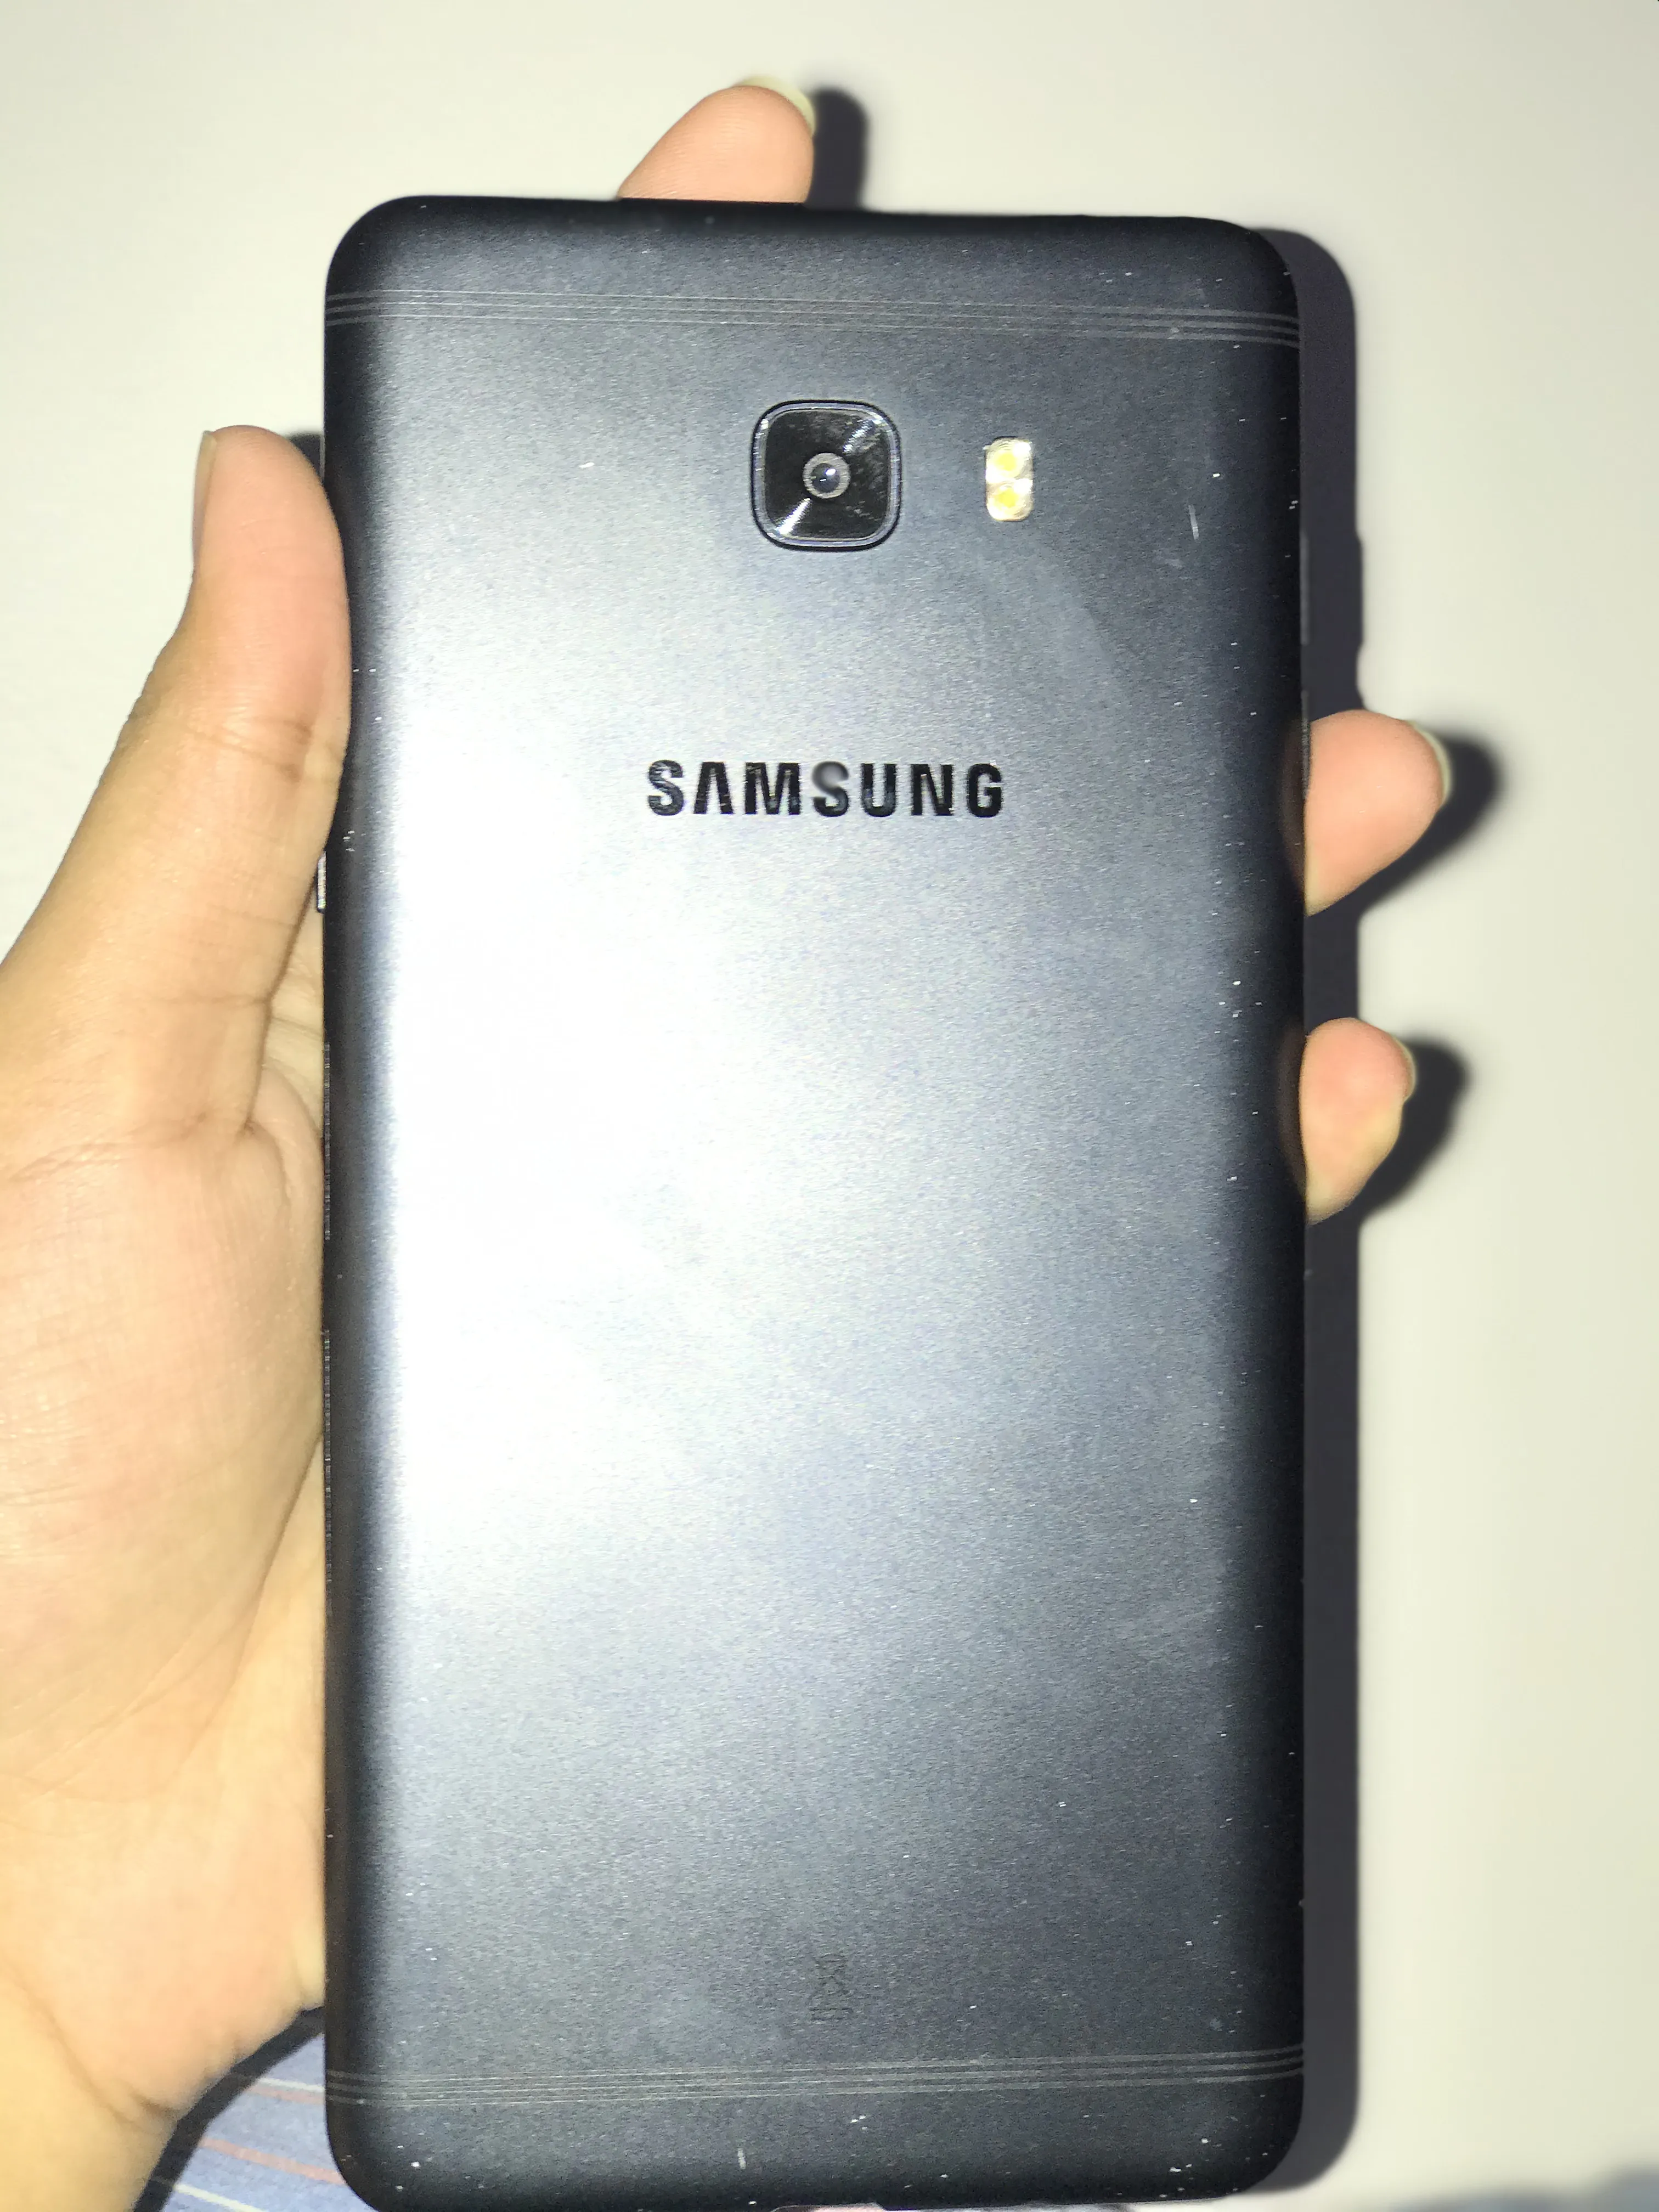 Samsung galaxy c9 pro - photo 1